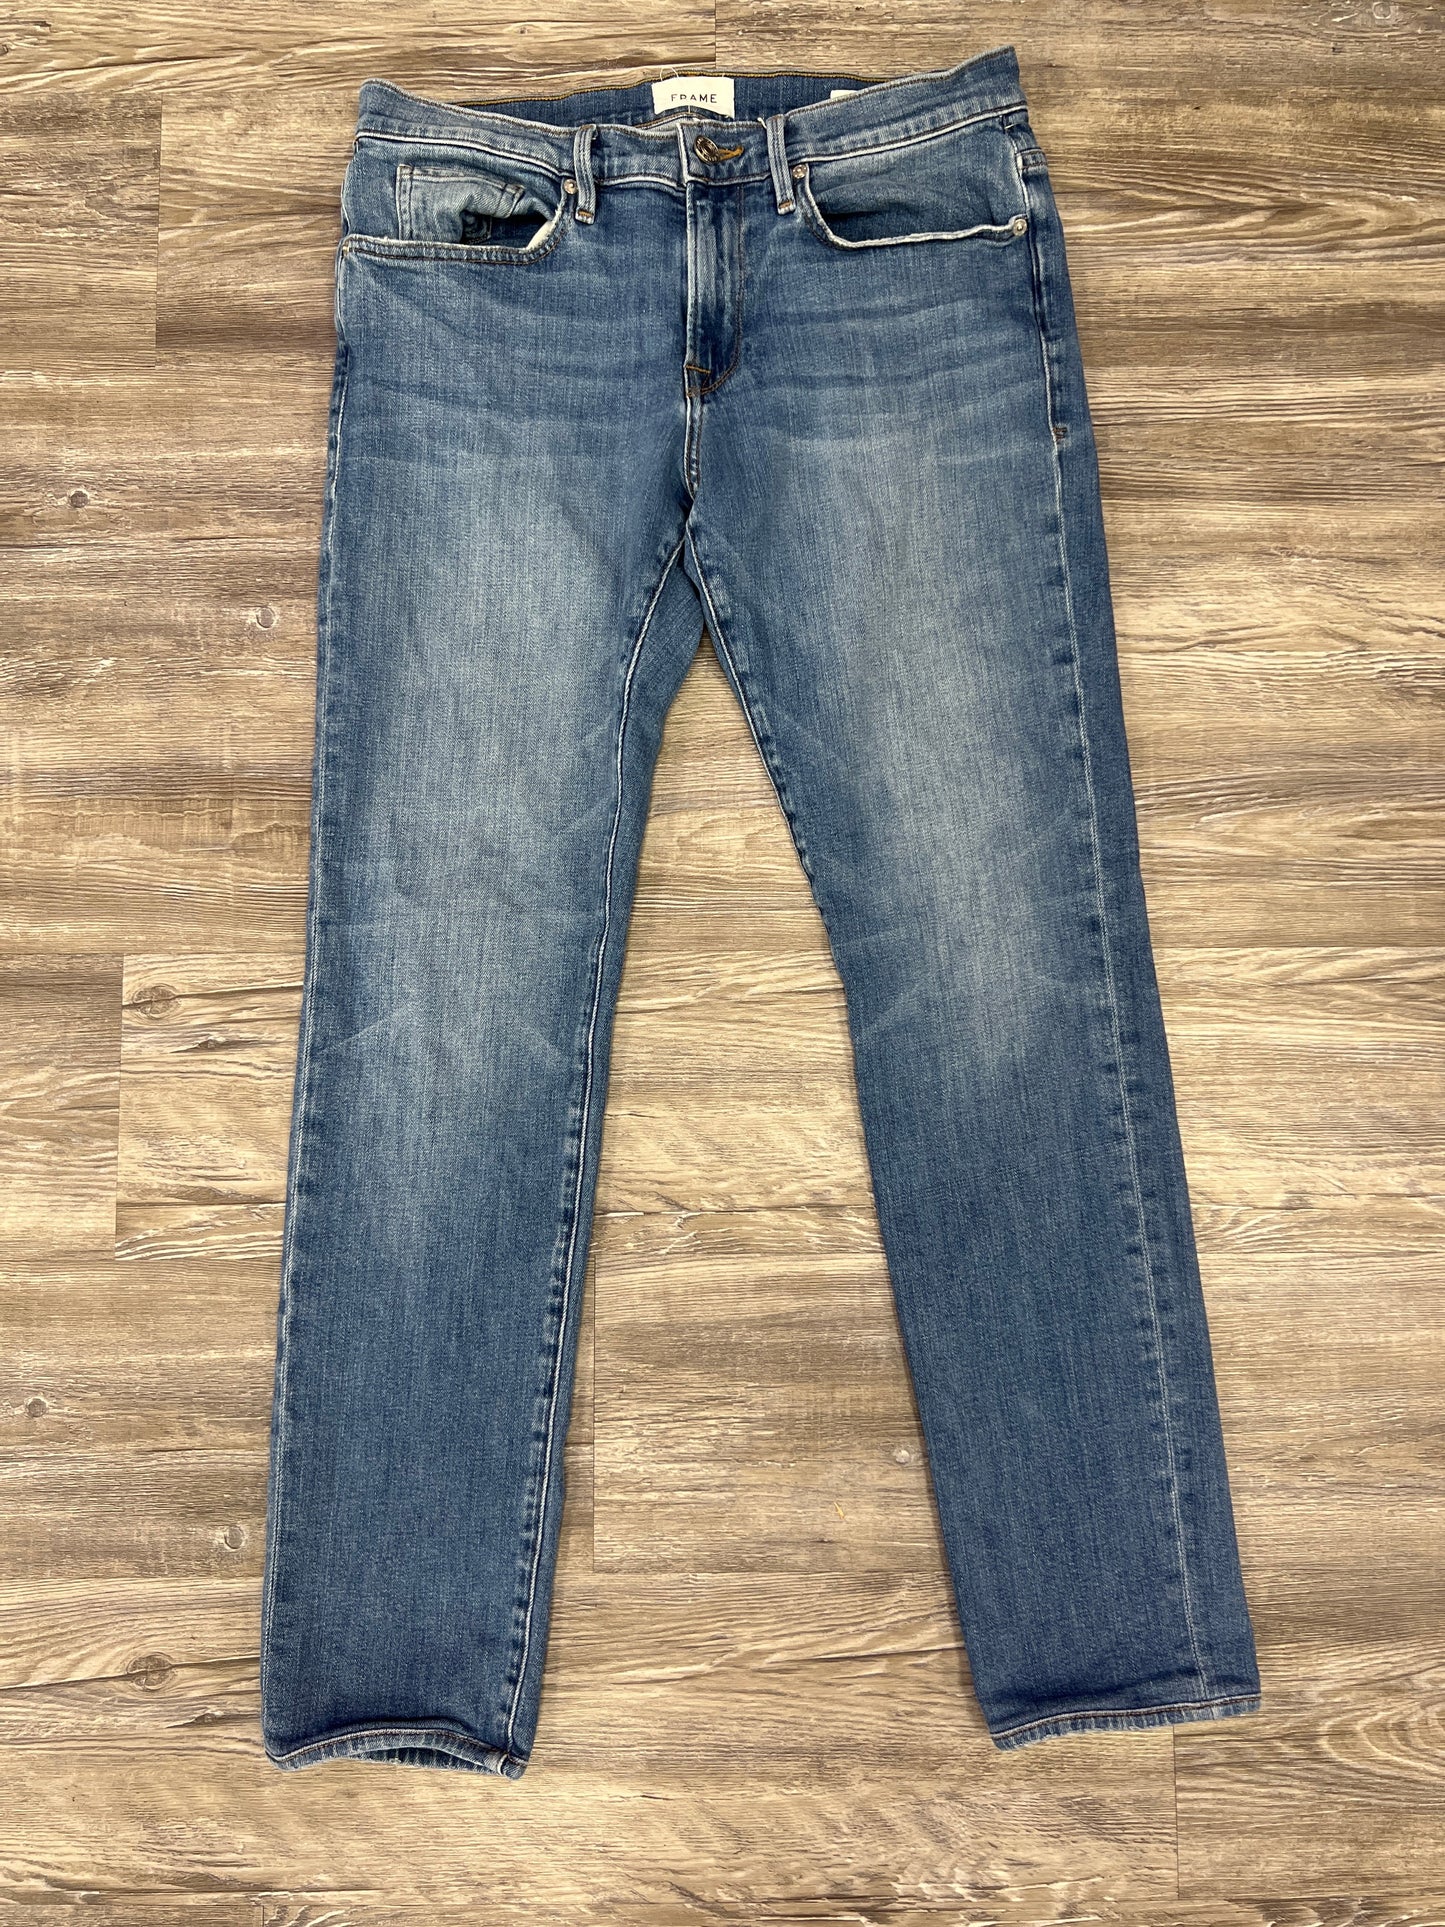 Jeans Designer By Frame Size: 12